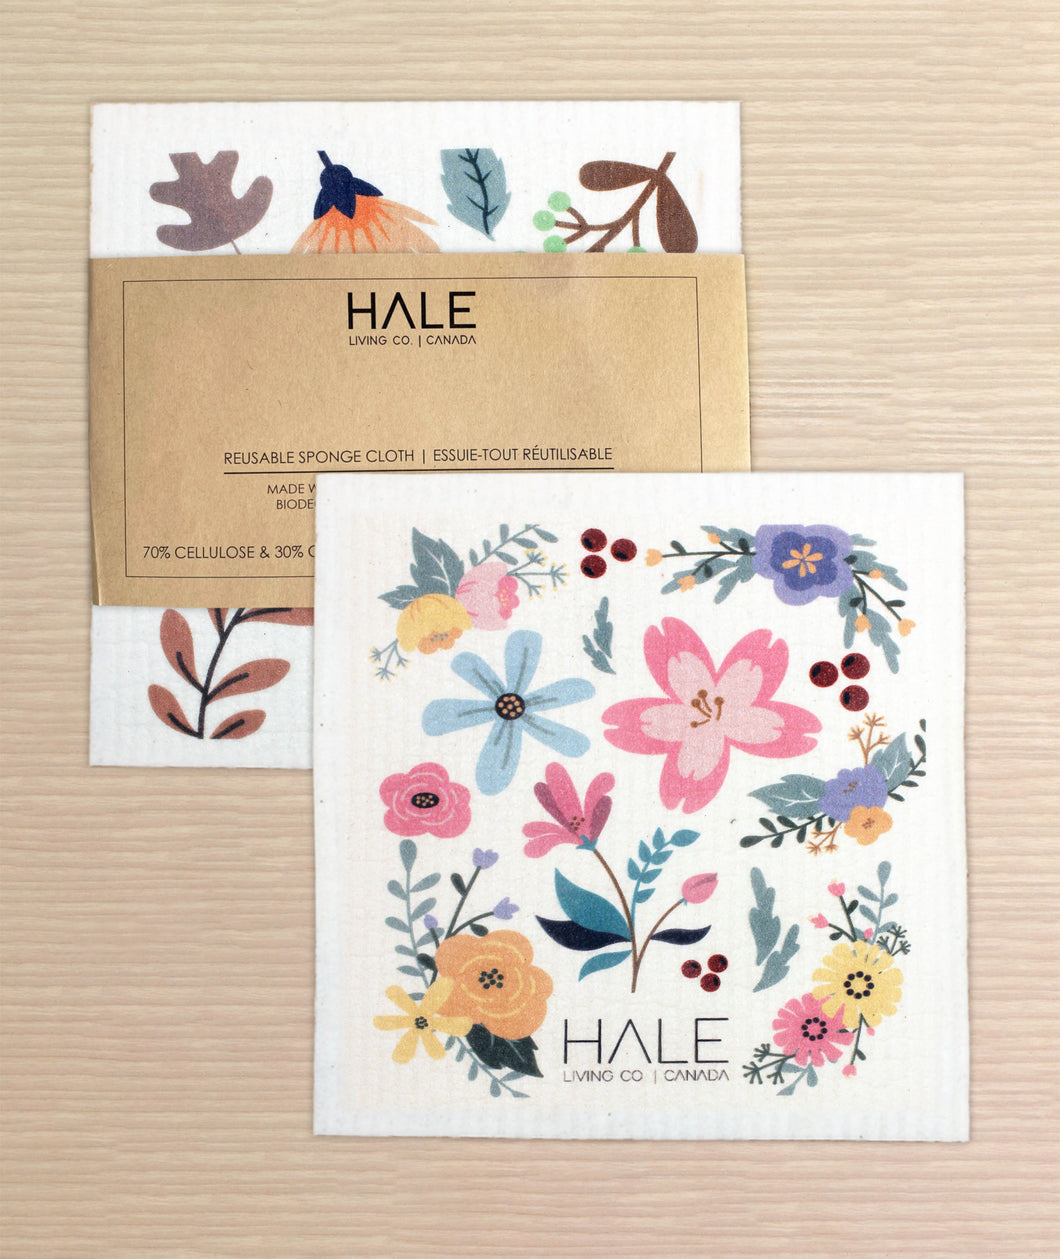 Hale Eco Pack - Reusable Sponge Cloth – Hale Living Co.